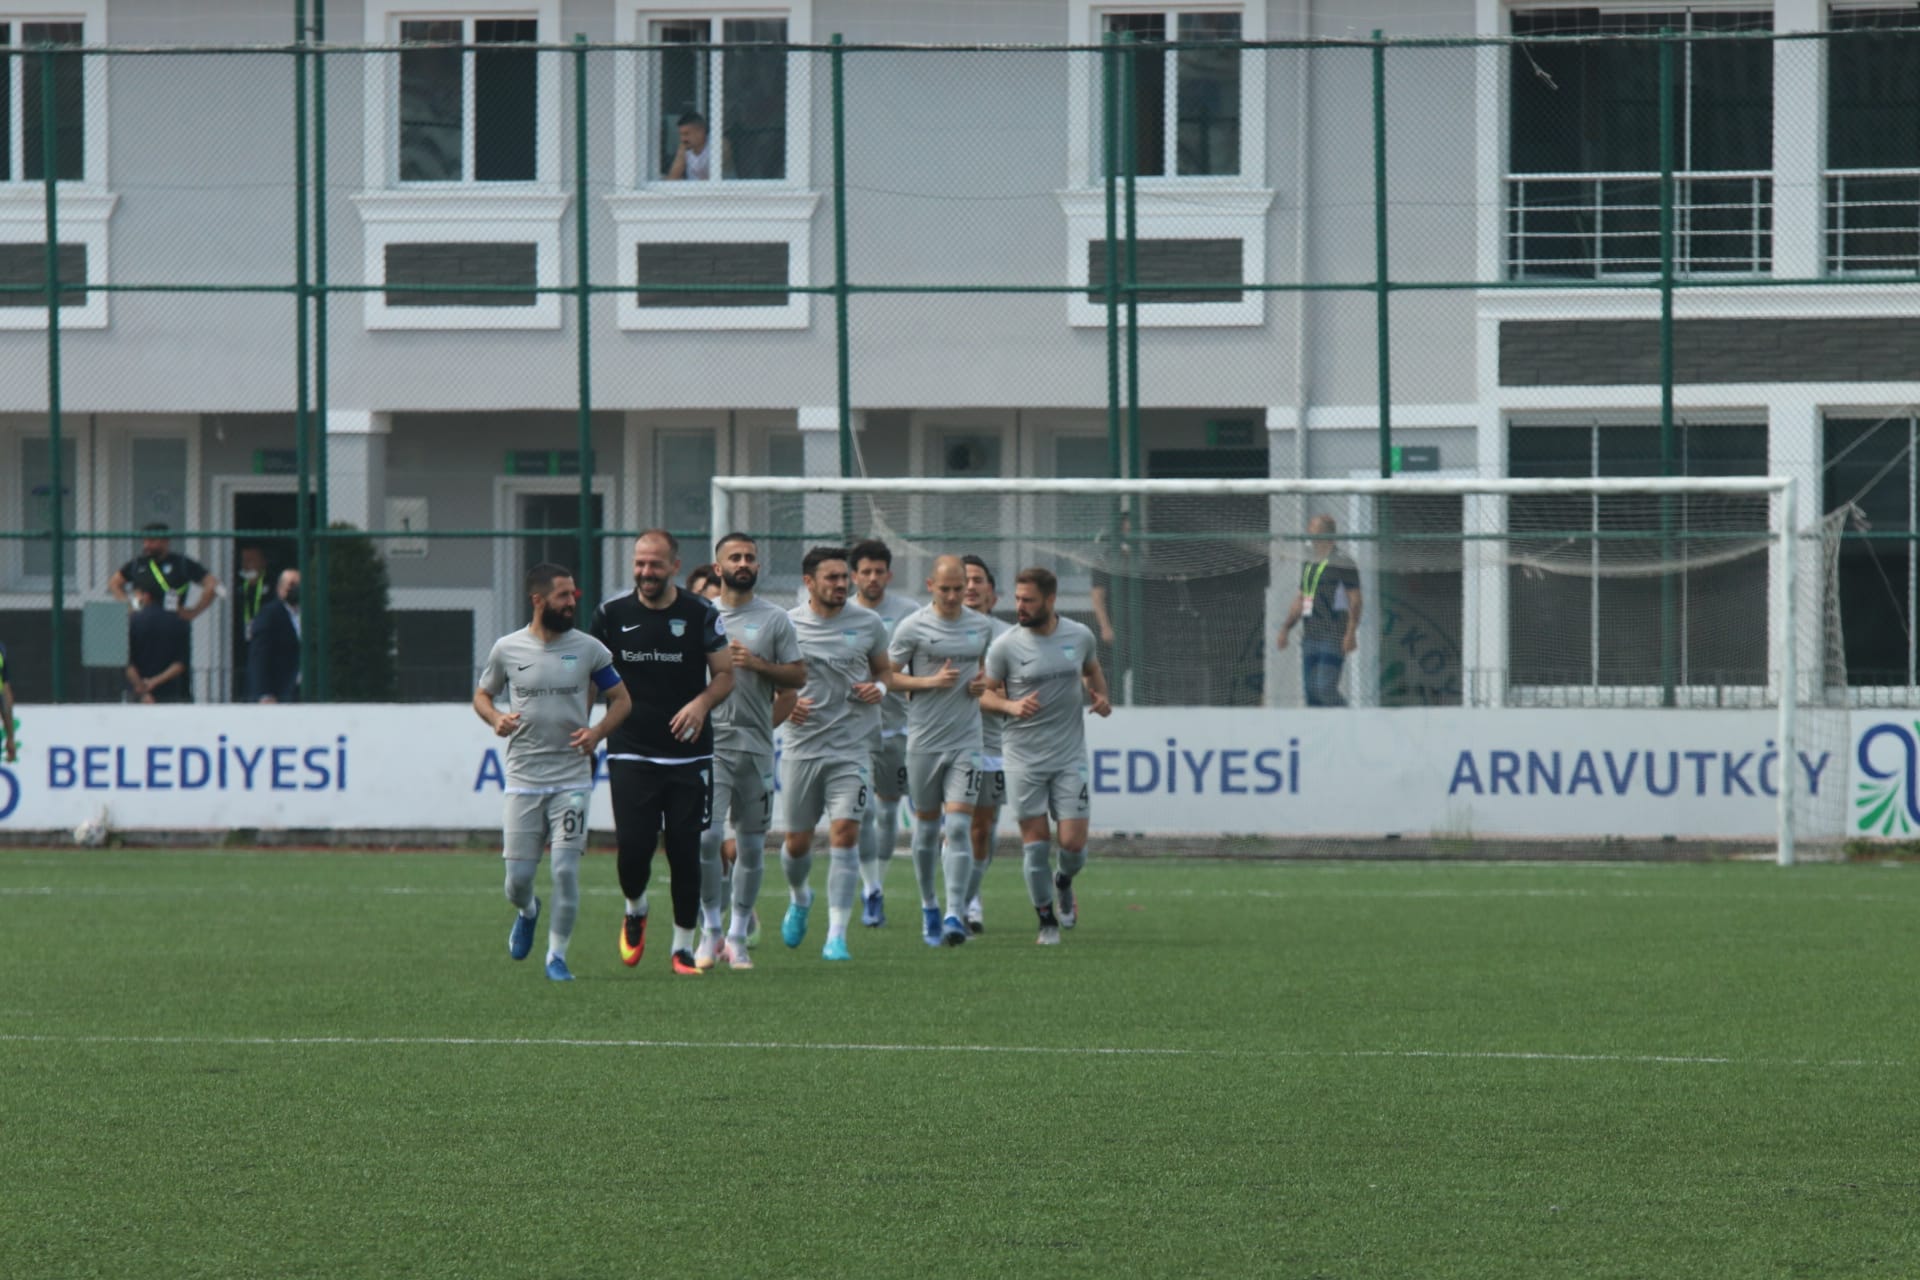 Arnavutköy Belediye Spor Play Off'ta